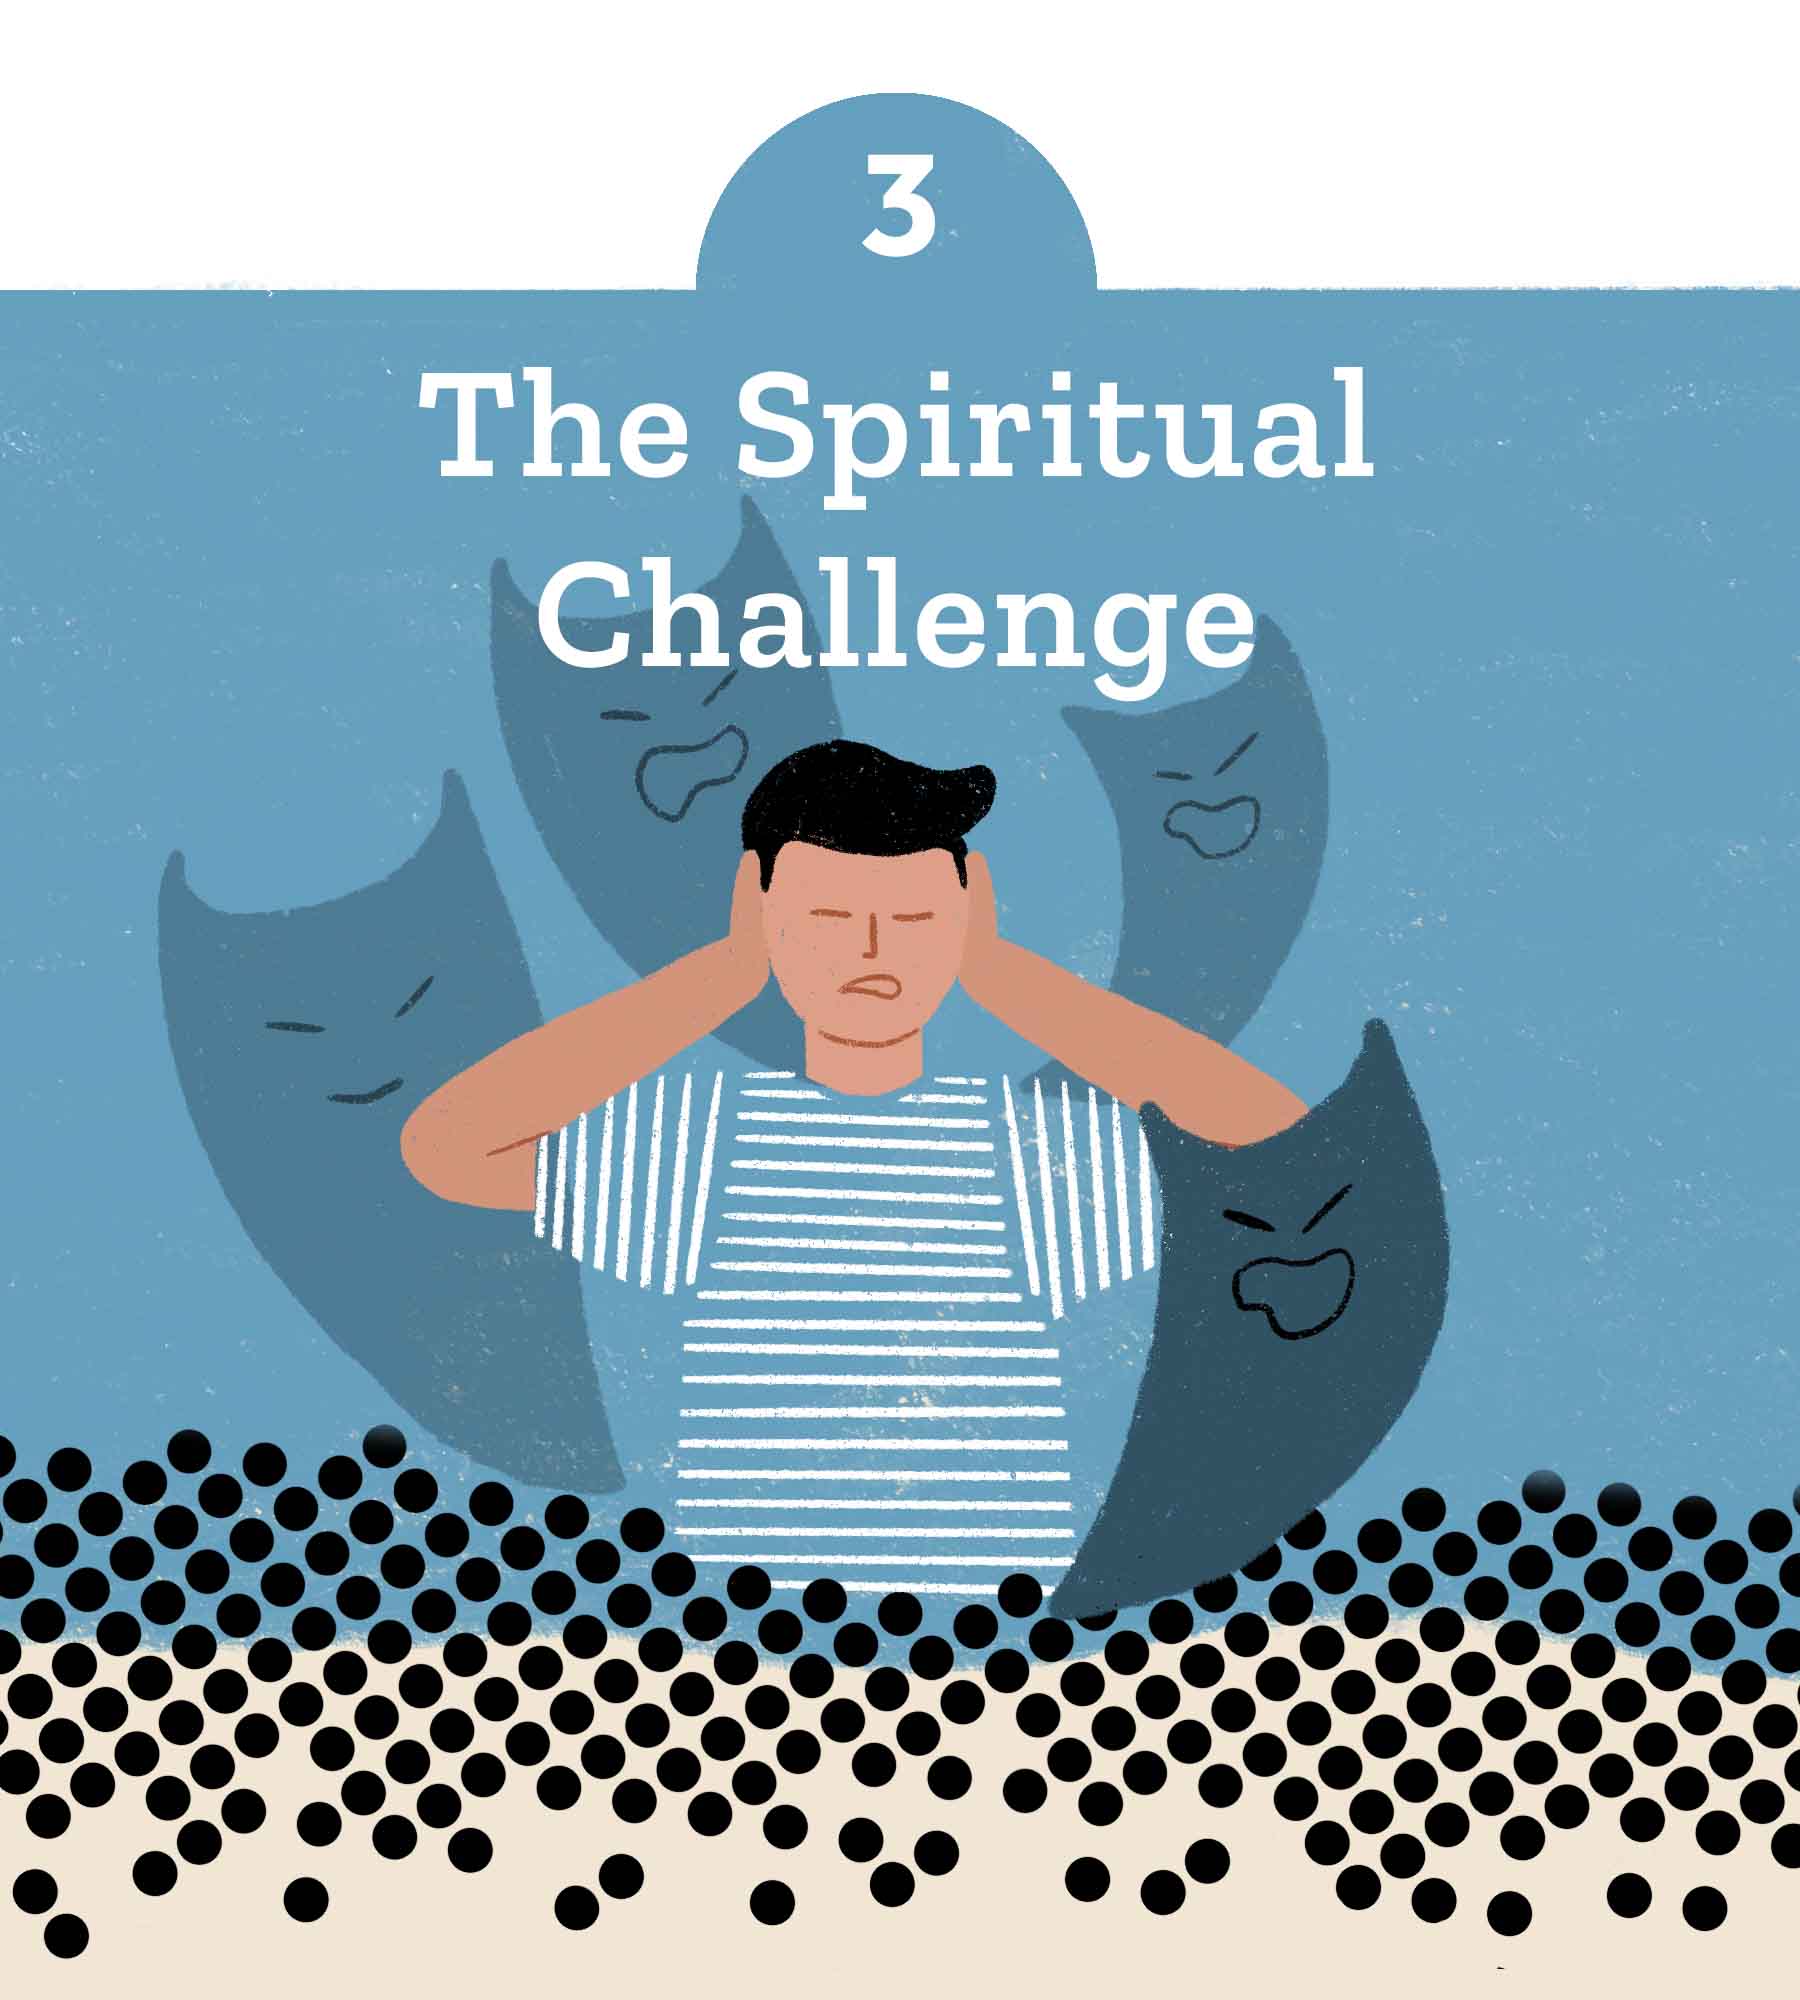 3. The Spiritual Challenge